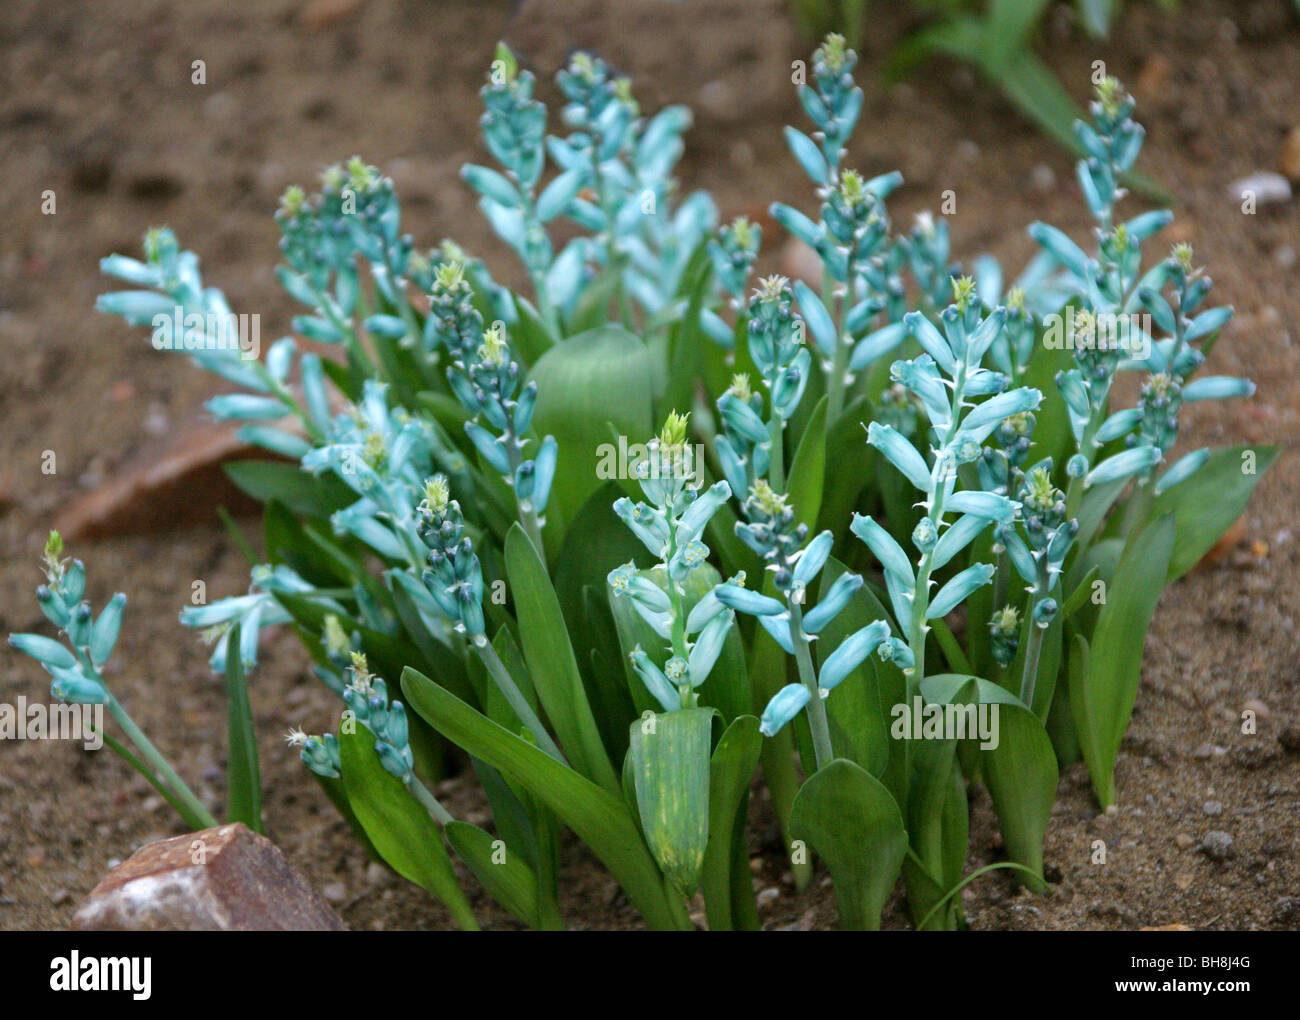 Cap vert coucou bleu, Lachenalia viridiflora, Hyacinthaceae, Province du Cap, Afrique du Sud. Banque D'Images